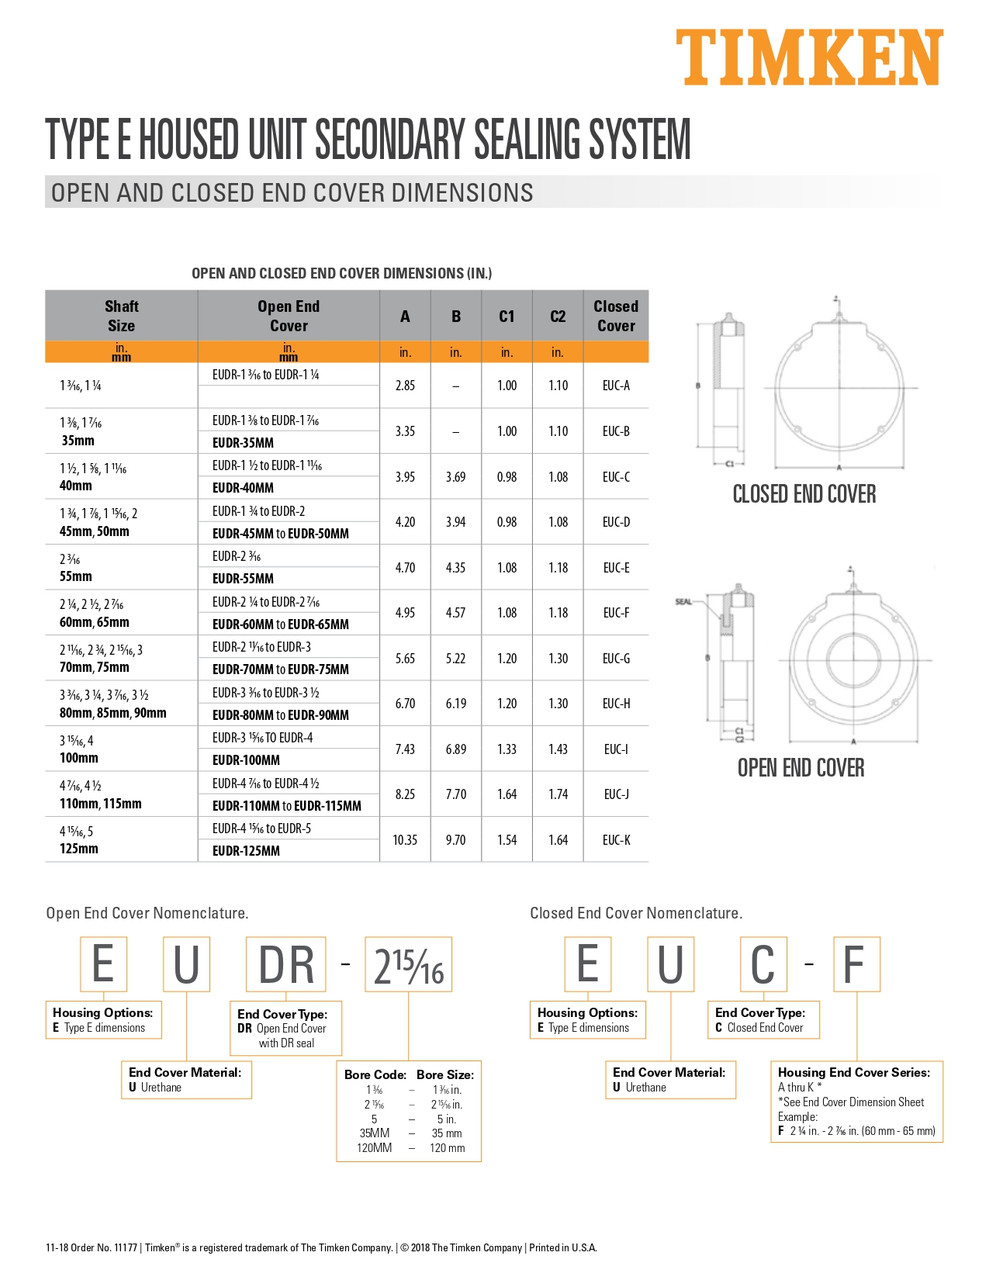 1-5/8" Type-E Bearing Open End Cover  EUDR-1 5/8